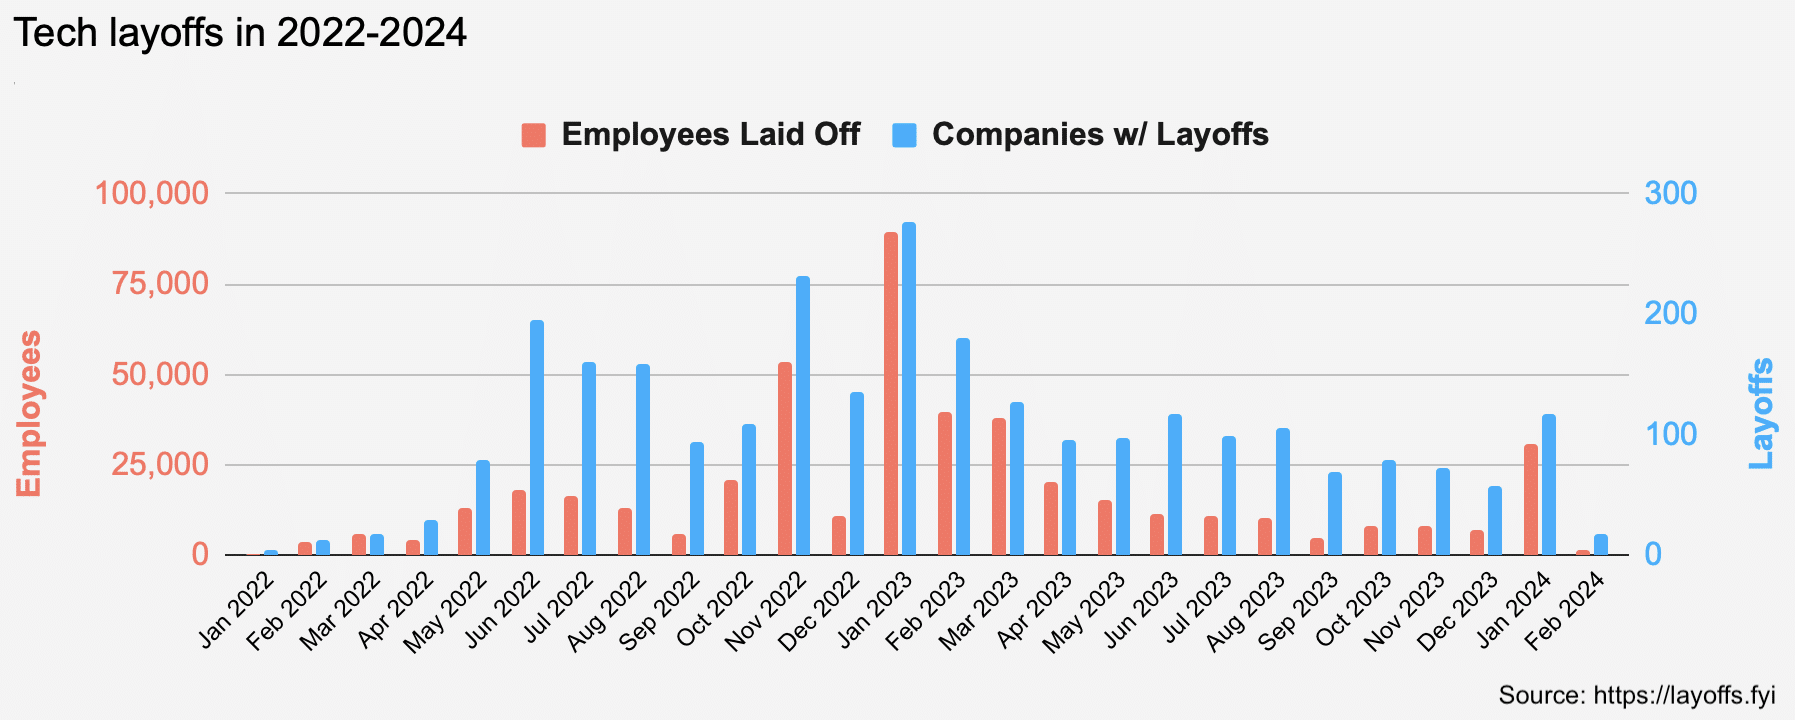 Tech Layoffs in 2022-2024. Source: Layoffs.fyi.